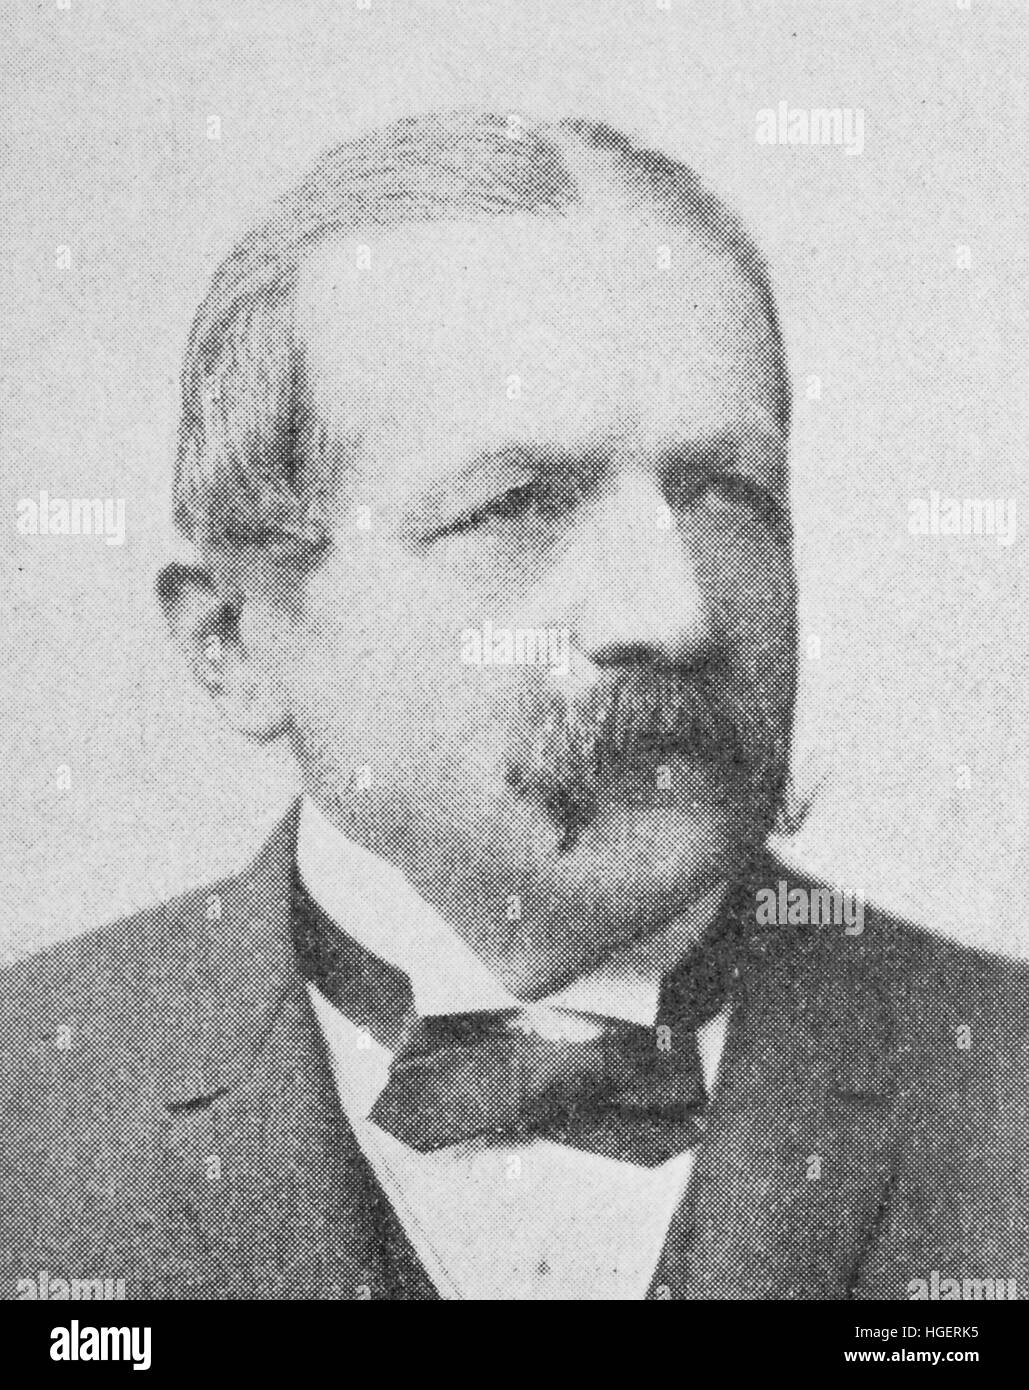 Richard Eduard Koch, à partir de 1908 par Koch, né le 15 septembre 1834 ; mort le 15 octobre 1910, a été de 1890 à 1908 président de la Reichsbank, reproduction d'une photo de l'année 1895, l'amélioration numérique Banque D'Images